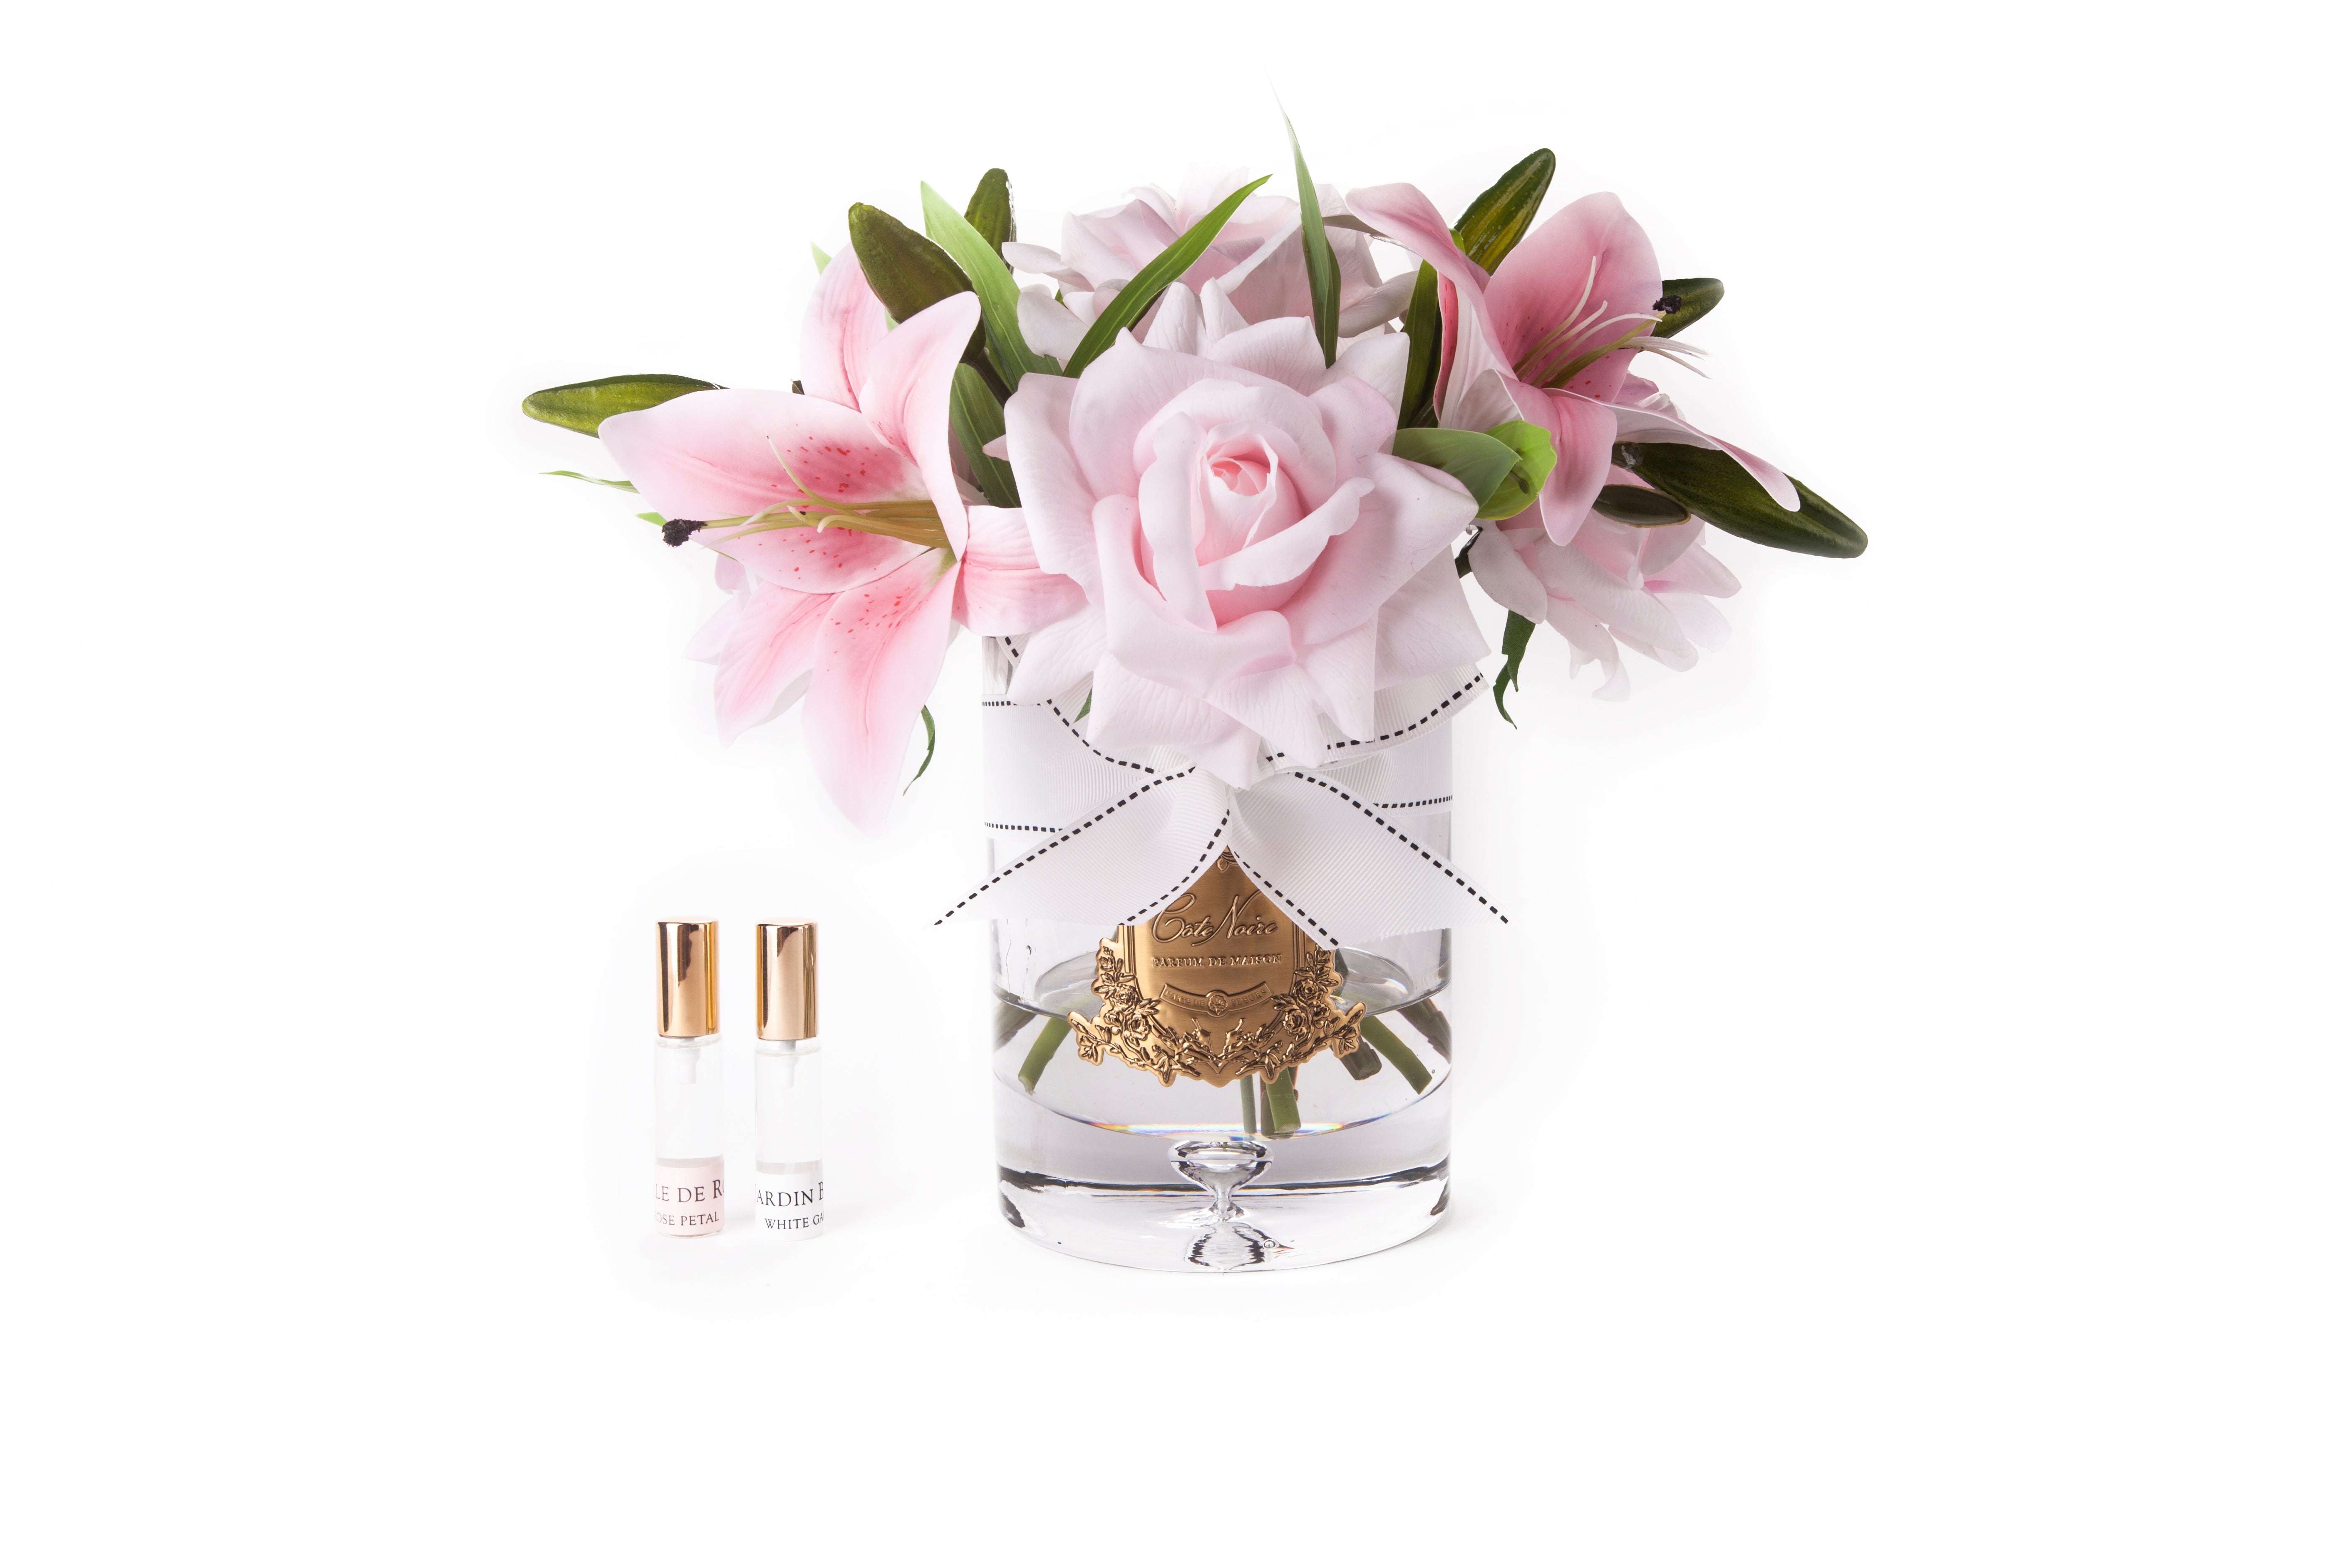 pinke lilien und rosen in hellem glas mit goldener inschrift und weisser schleife. daneben zwei parfumsprays. 